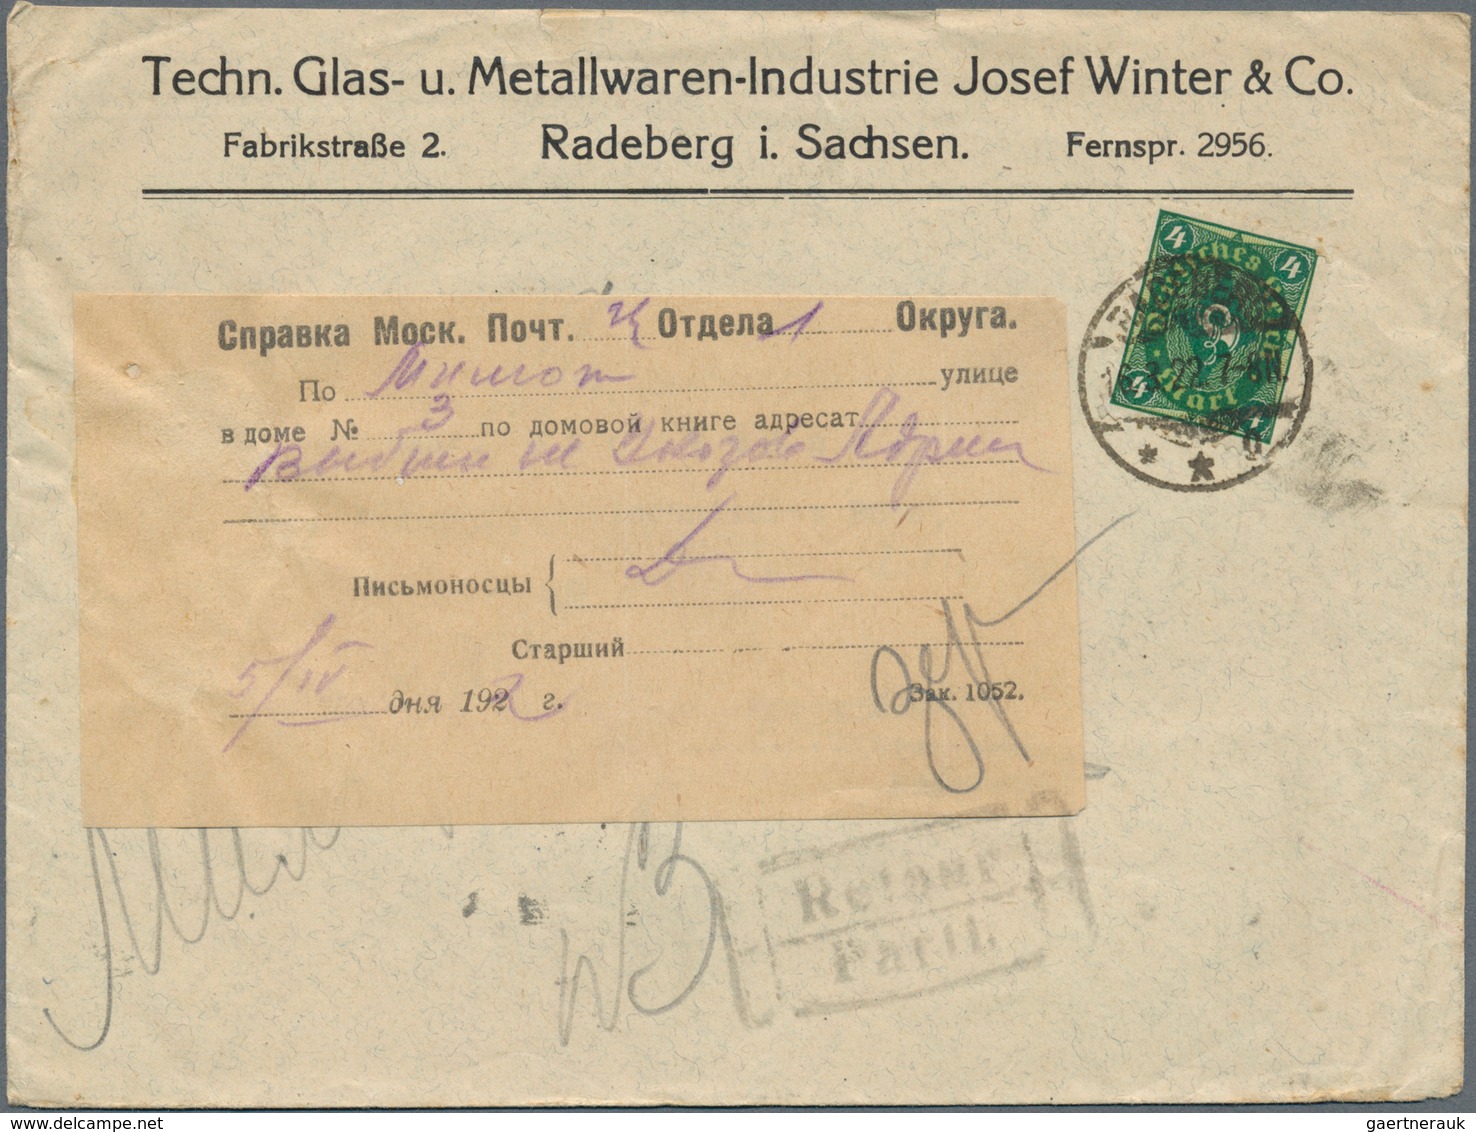 Deutsches Reich - Inflation: 1921-1923, Partie mit über 350 Briefen und Belegen, dabei viele untersc